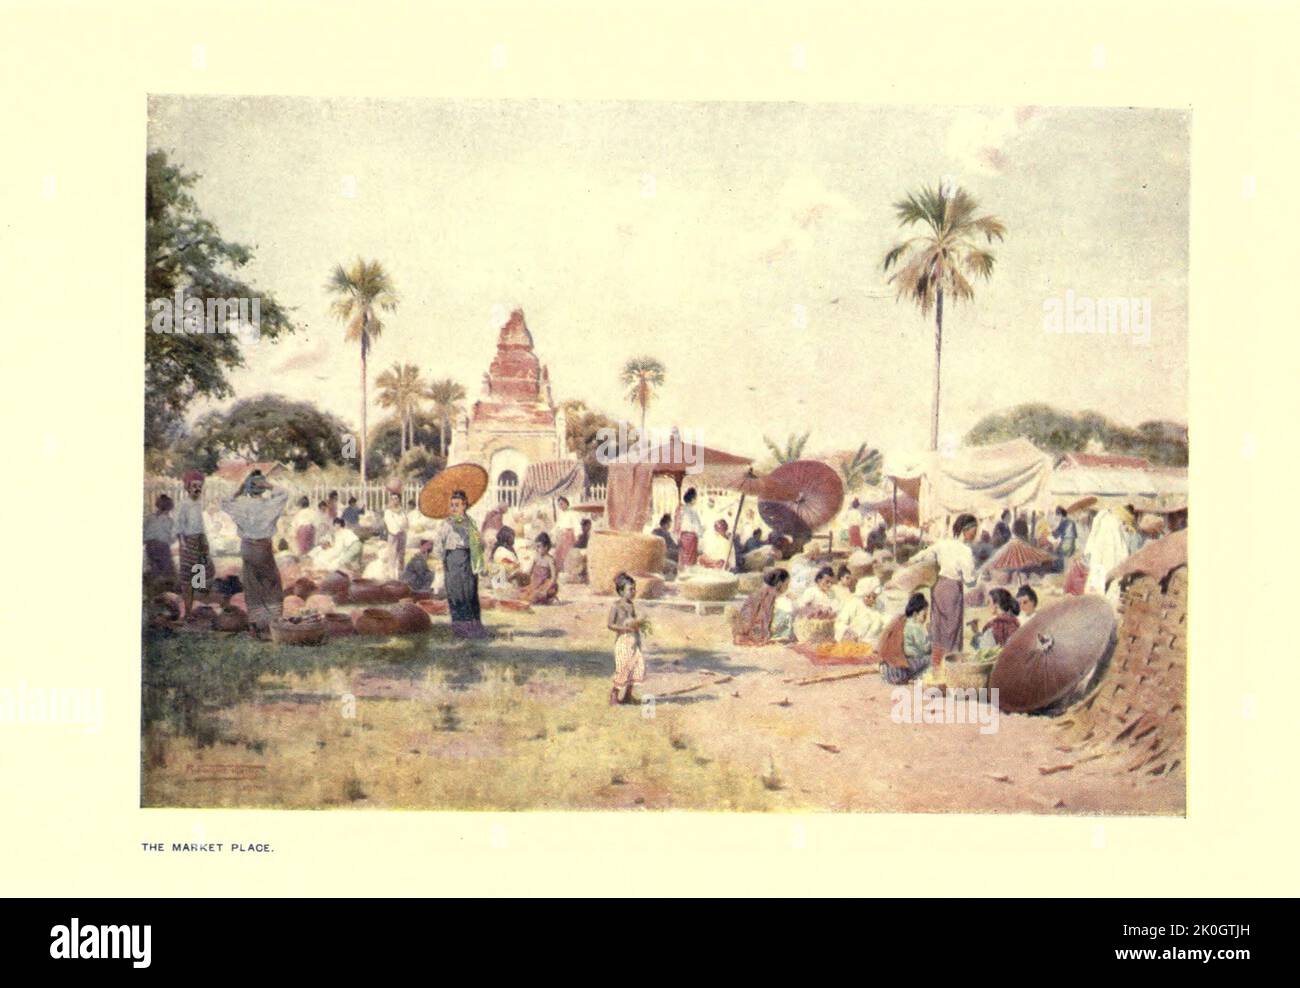 IL MERCATO dal libro ' Burma ' di Kelly, R. Talbot (Robert Talbot), 1861-1934 Data di pubblicazione 1908 Editore Londra : Adam e Charles Black Foto Stock